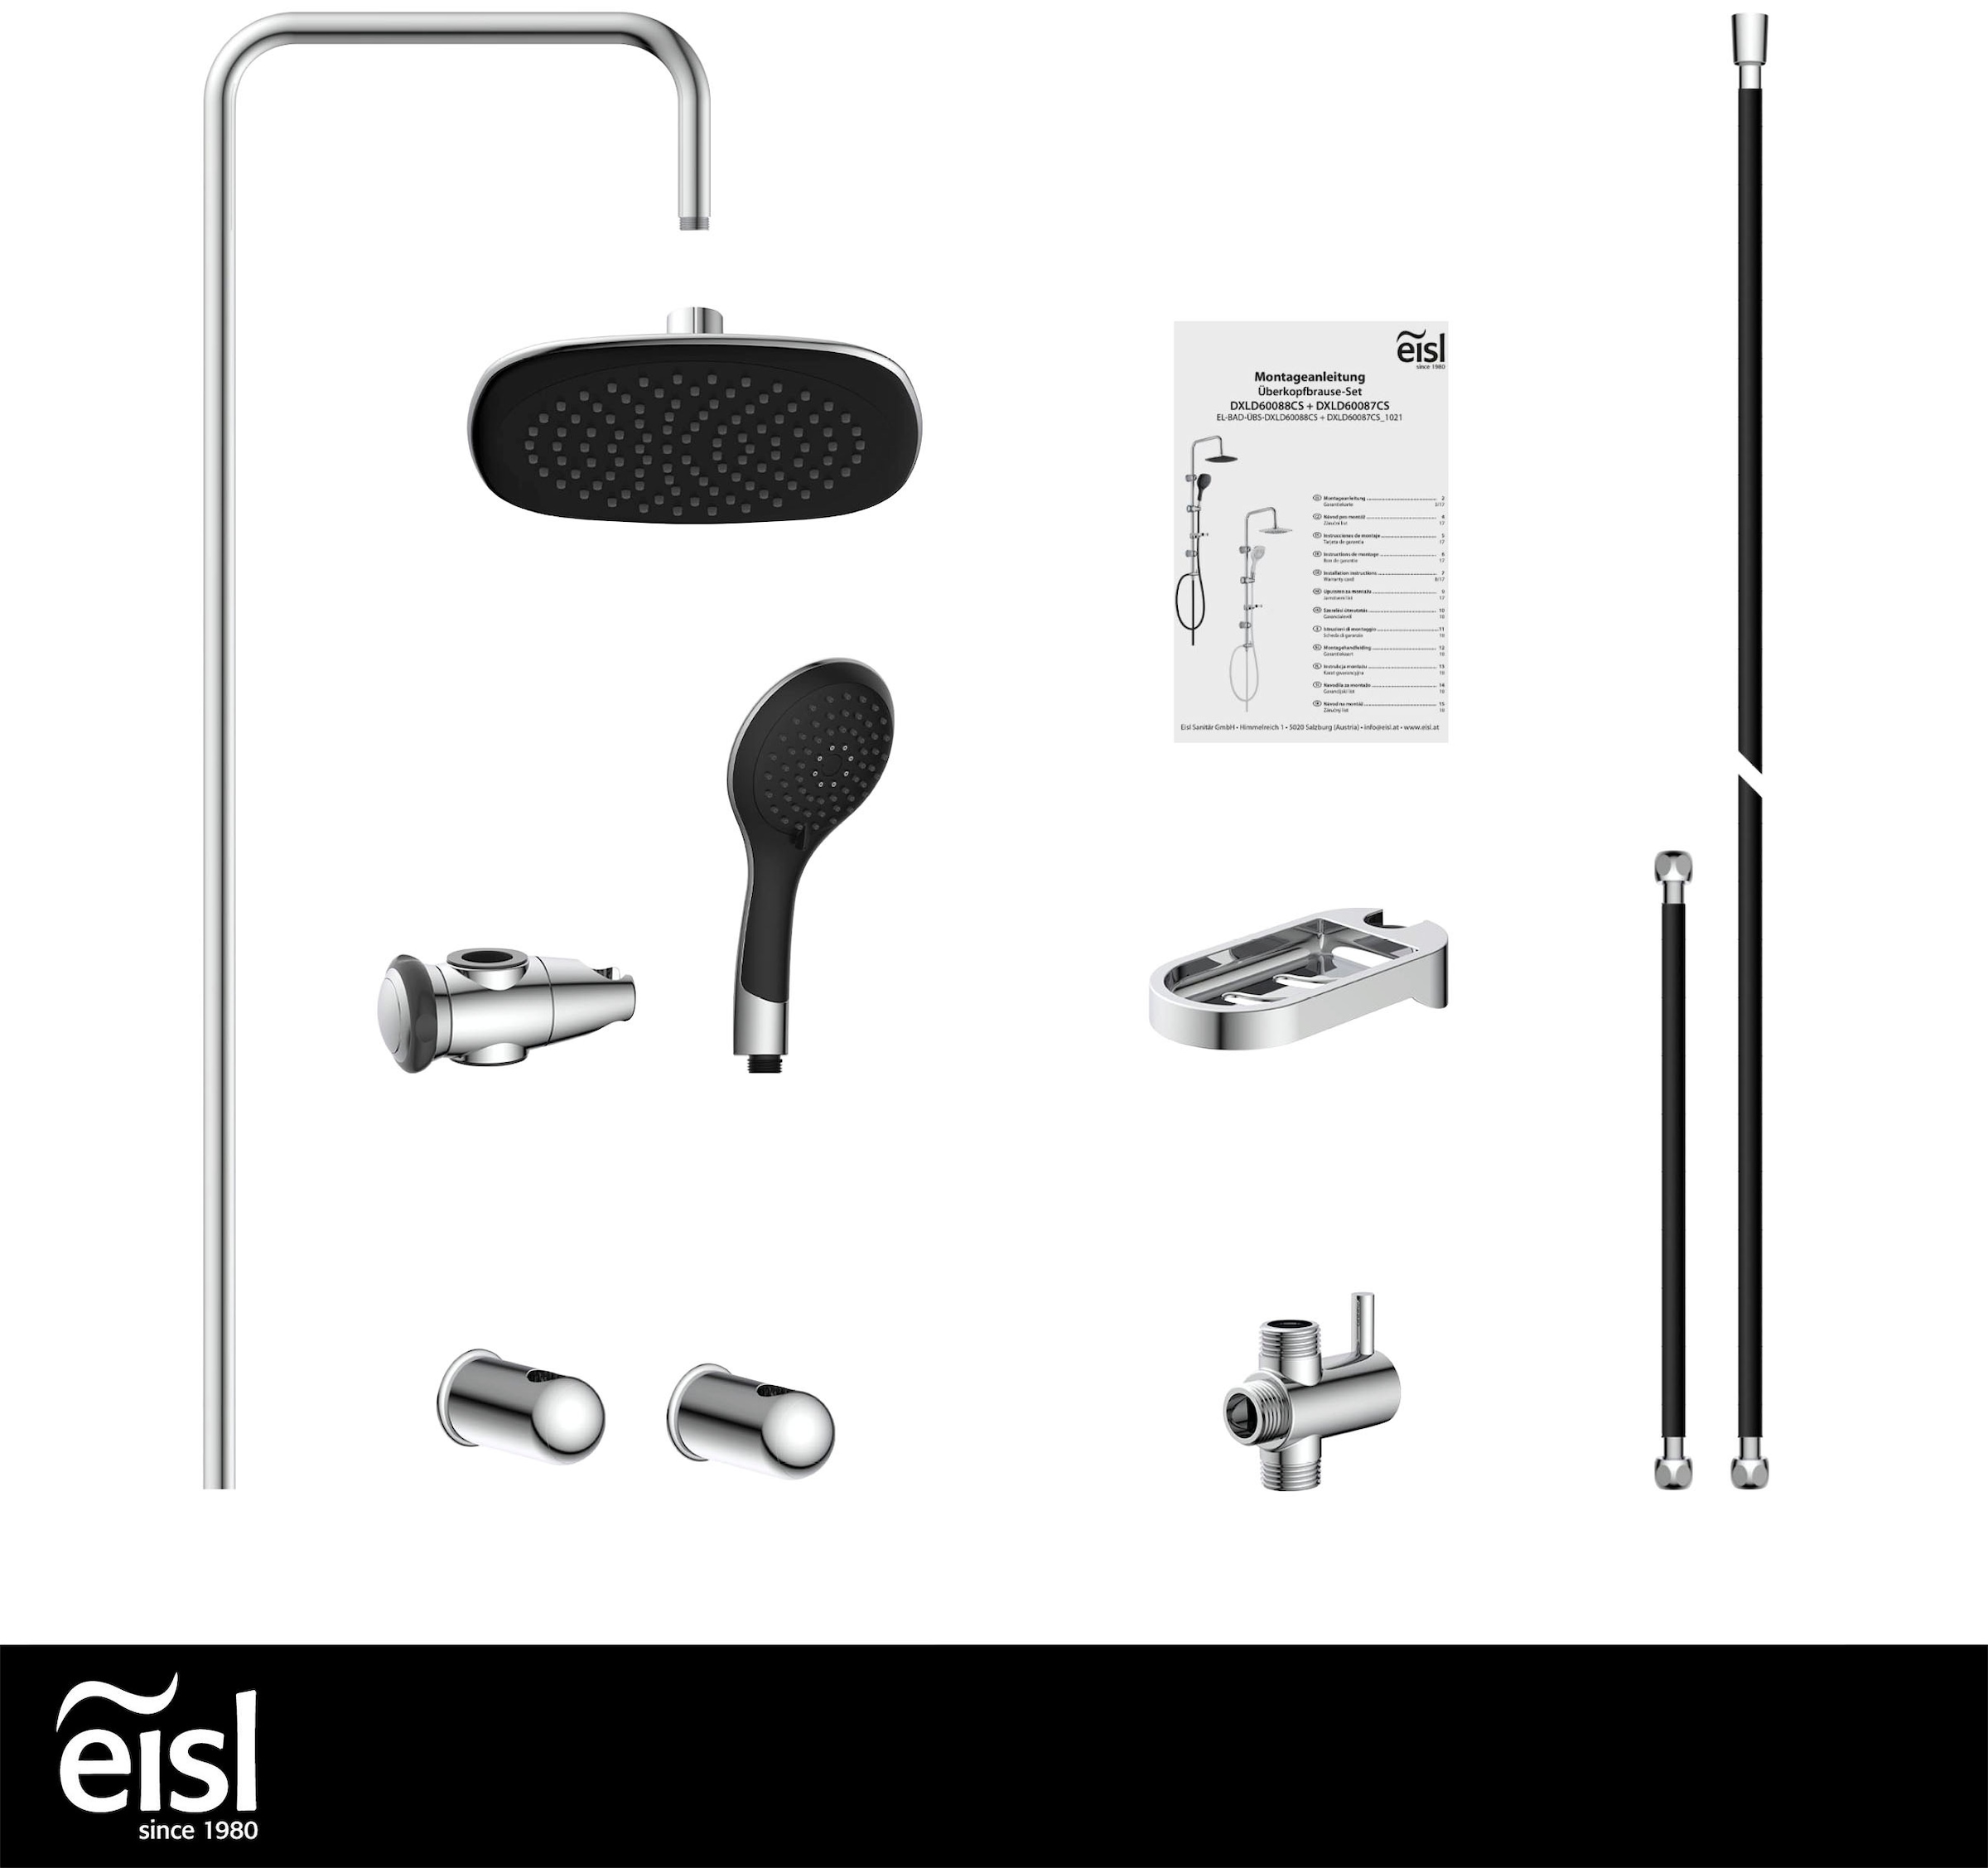 Eisl Brausegarnitur »Duschtraum«, Duschset mit Kopf- und Handbrause, Regendusche mit 3 Funktionen